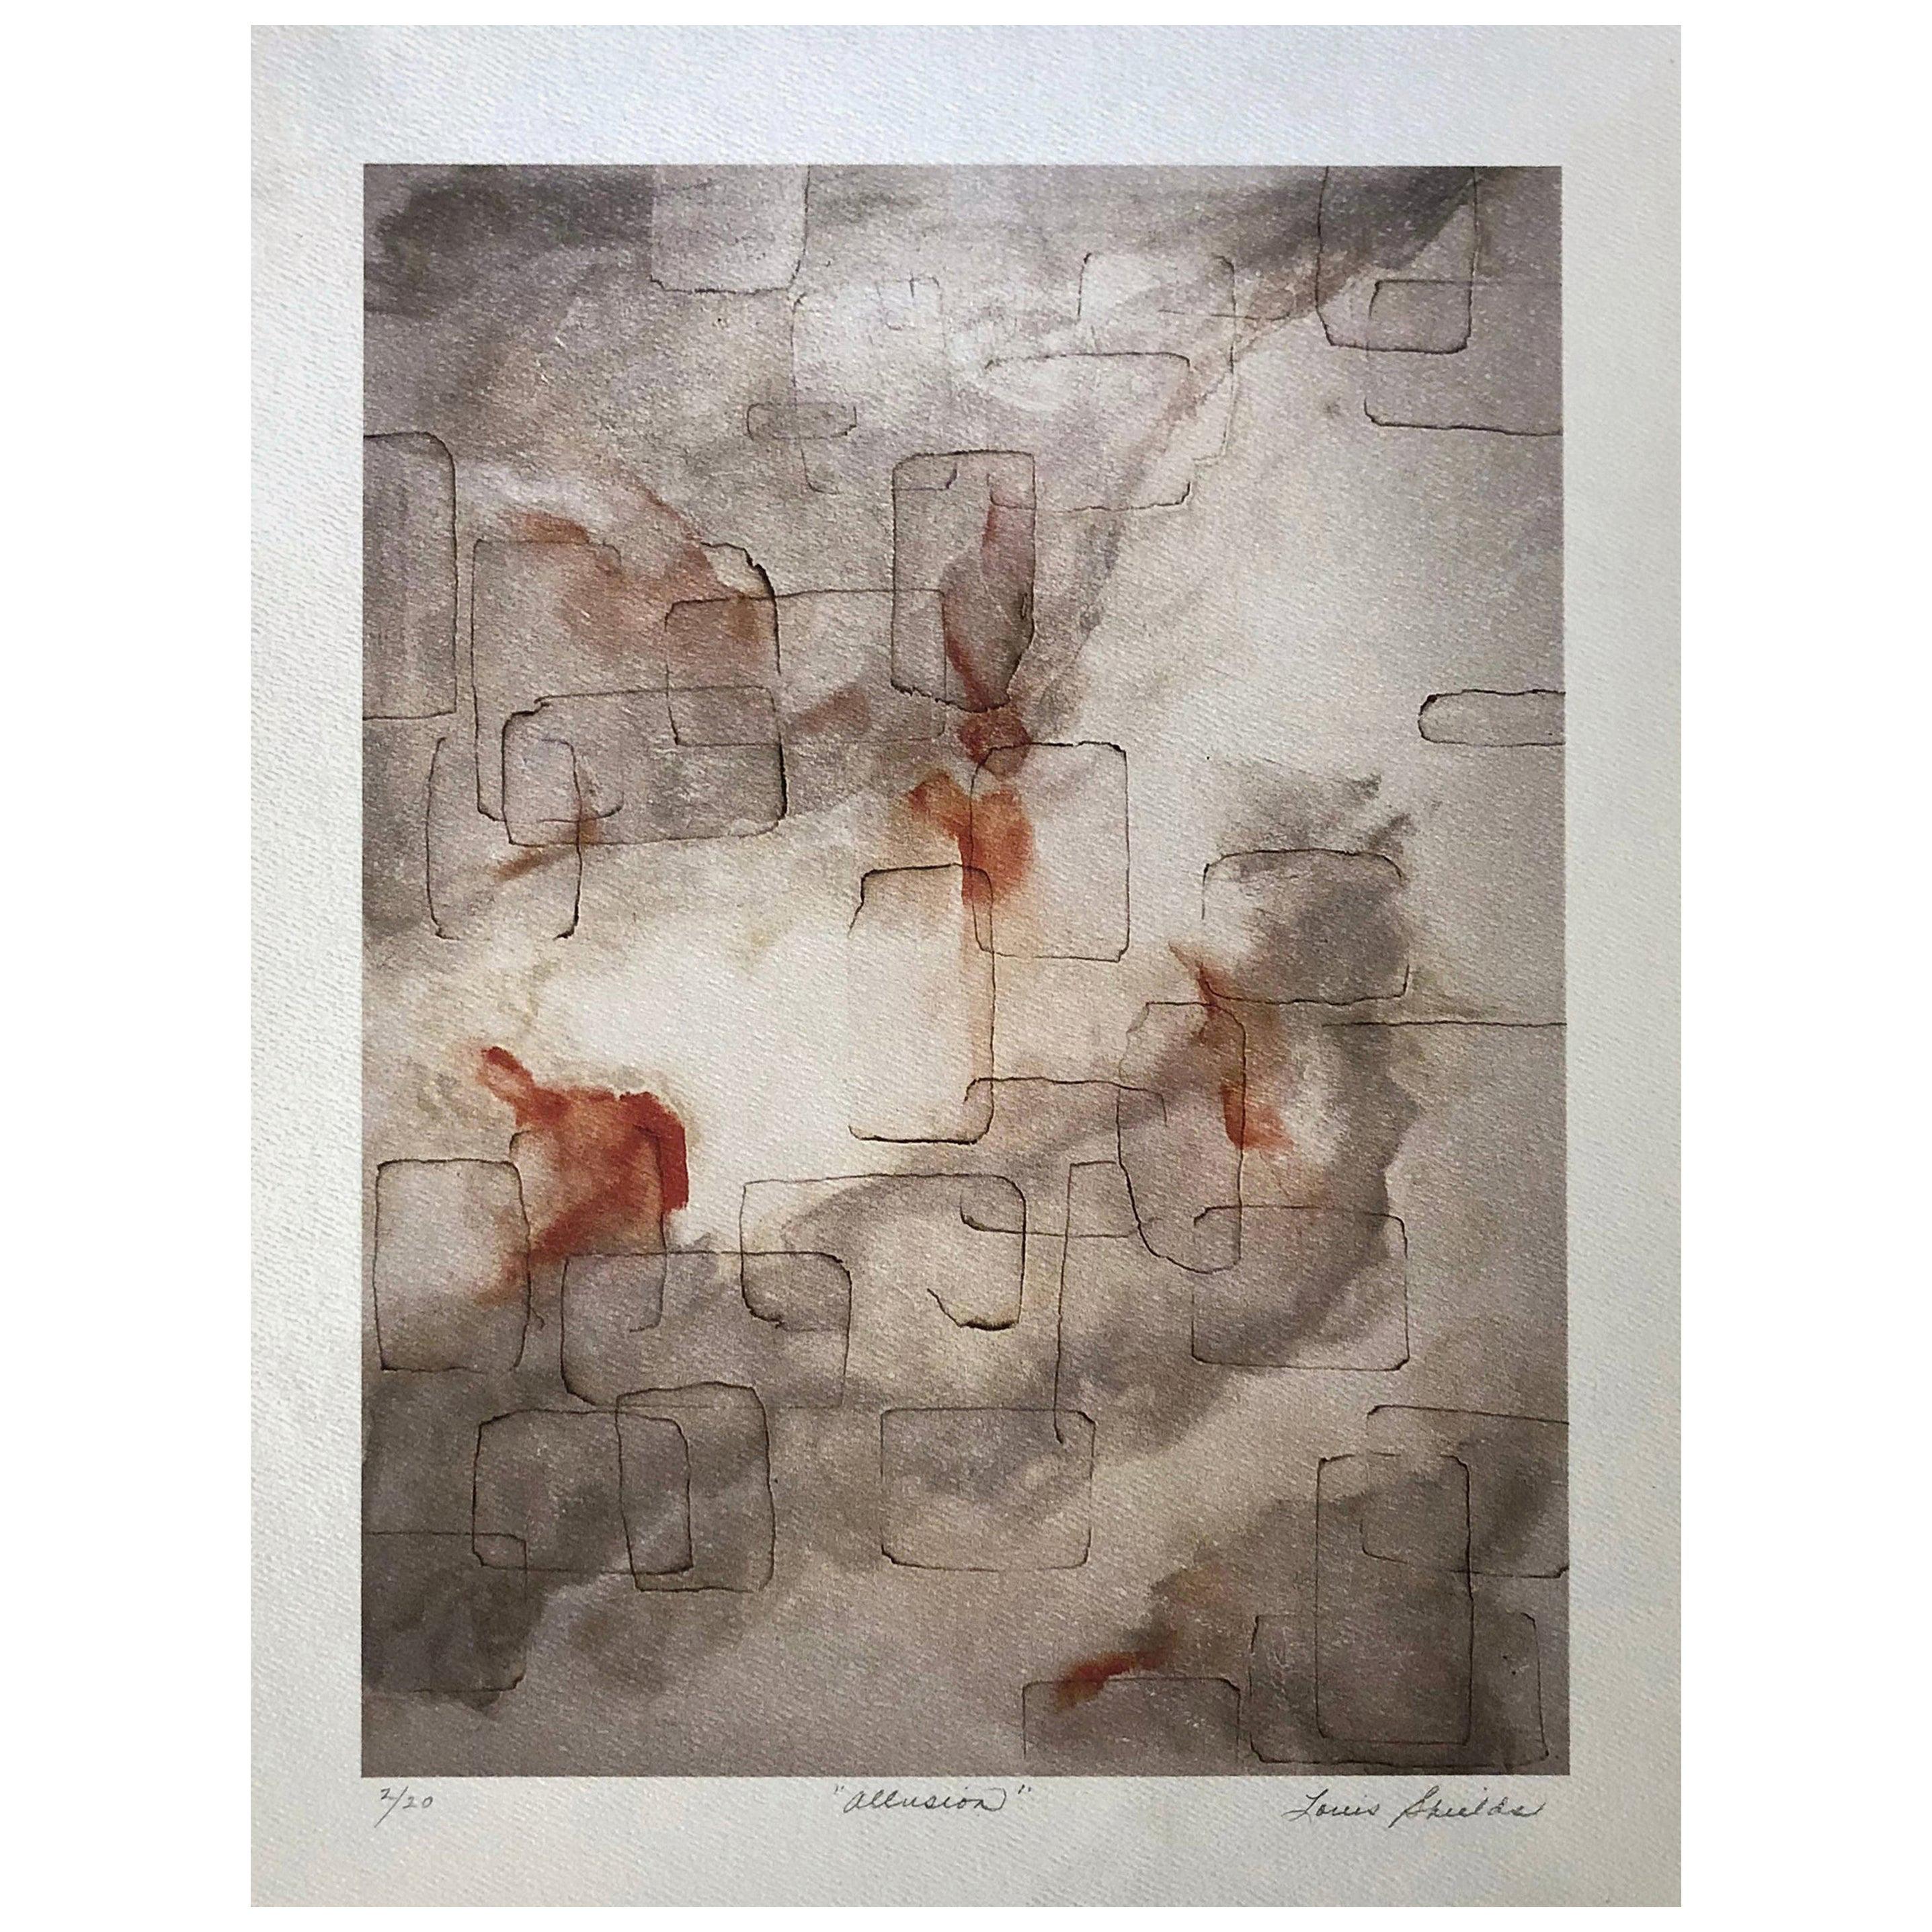 "Allusion" Impression d'archive abstraite:: papier aquarelle texturé